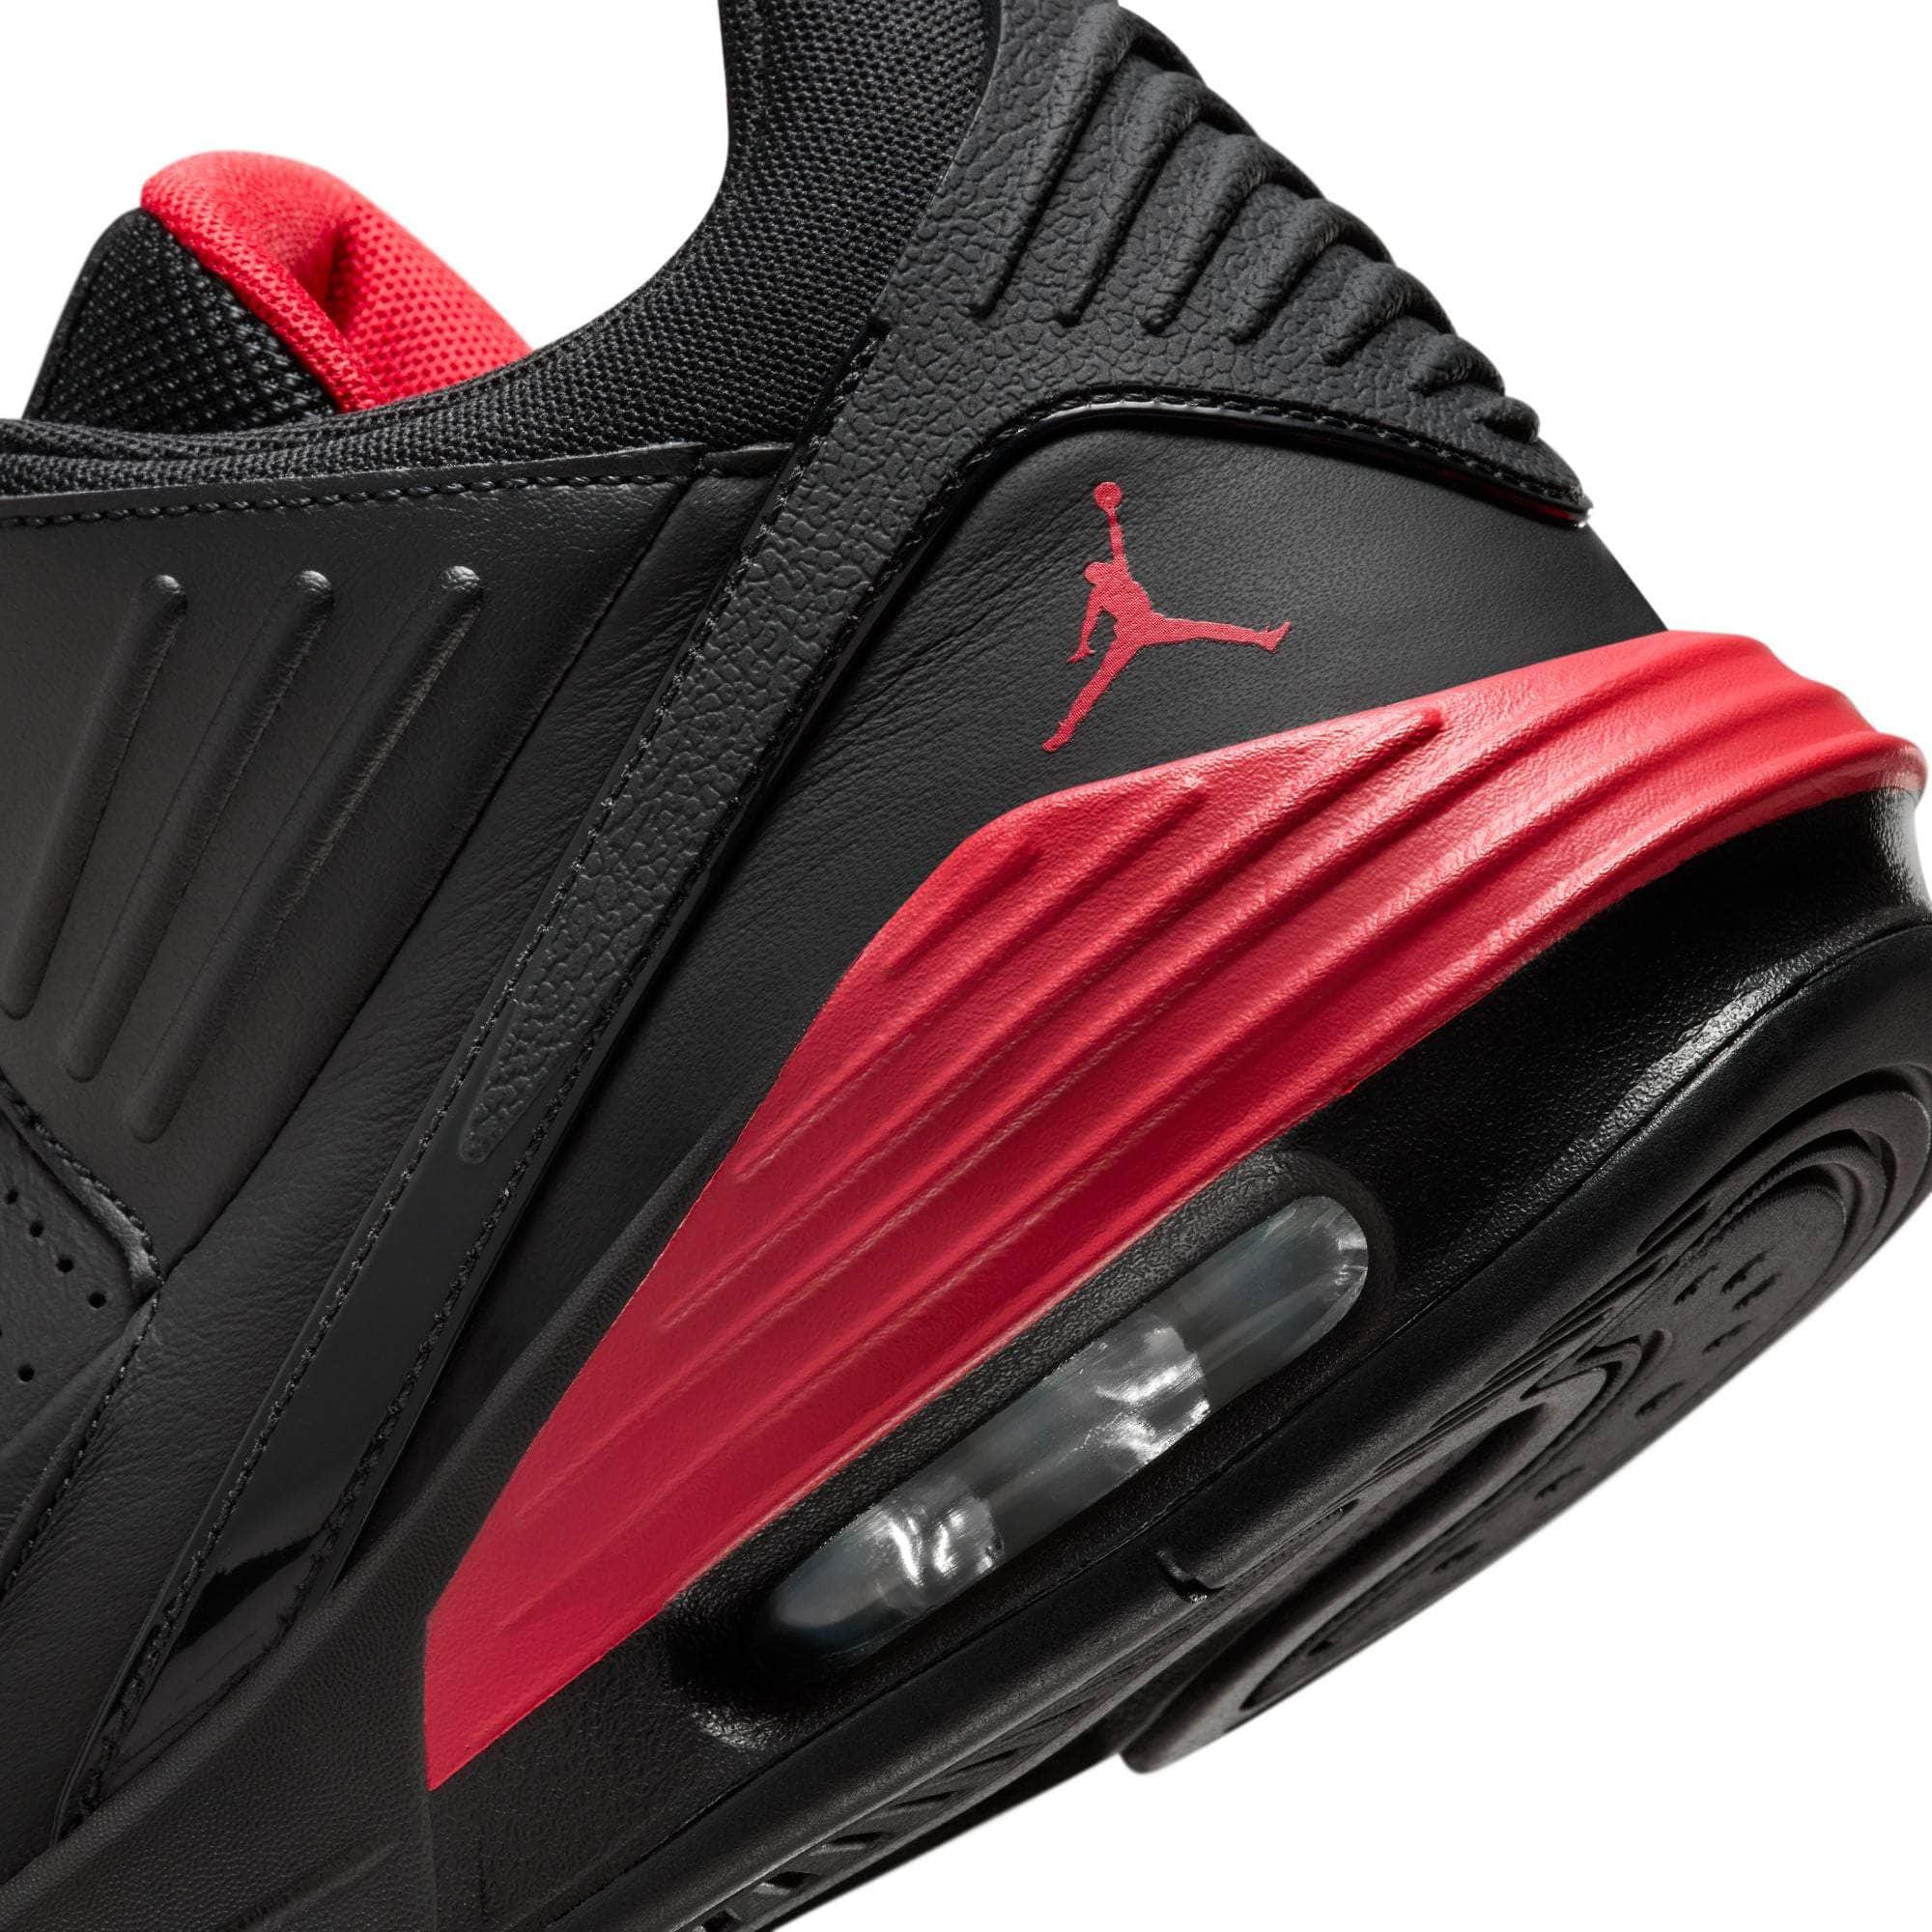 Air Jordan FOOTWEAR Air Jordan Max Aura 5 "Black/University Red-Black" - Men's